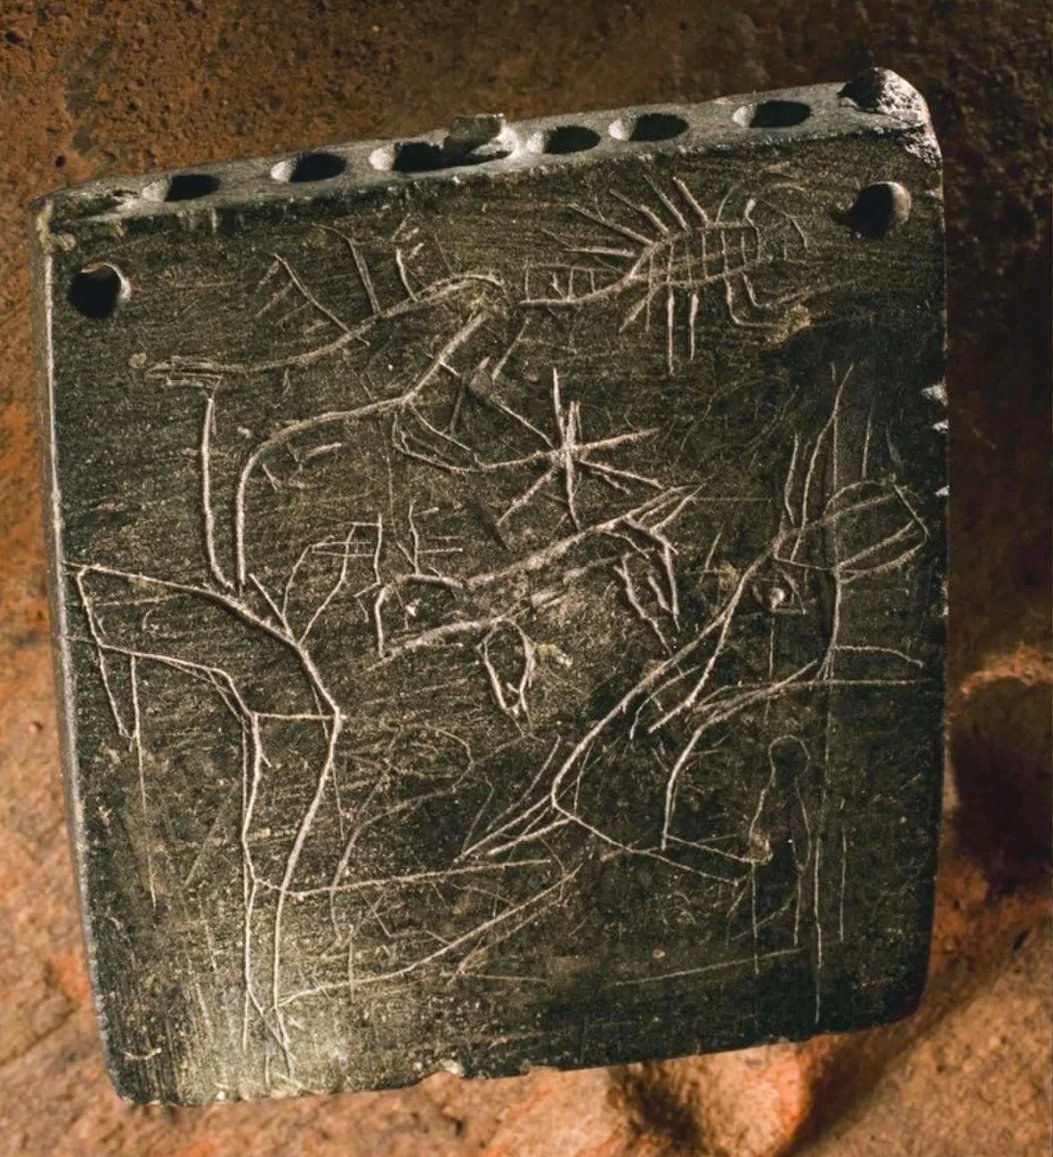 Antik büyünün ön ve arka kısımlarında akrep gibi hayvan resimleri vardı (burada gösterilmiştir). Büyünün yazısının analizi, MÖ 850 ile MÖ 800 arasında bir zamanda yazıldığını gösteriyor ve bu, yazıtı şimdiye kadar bulunan en eski Aramice büyü yapıyor. © Fotoğraf Roberto Ceccacci/Chicago-Tübingen Zincirli Seferi'nin izniyle